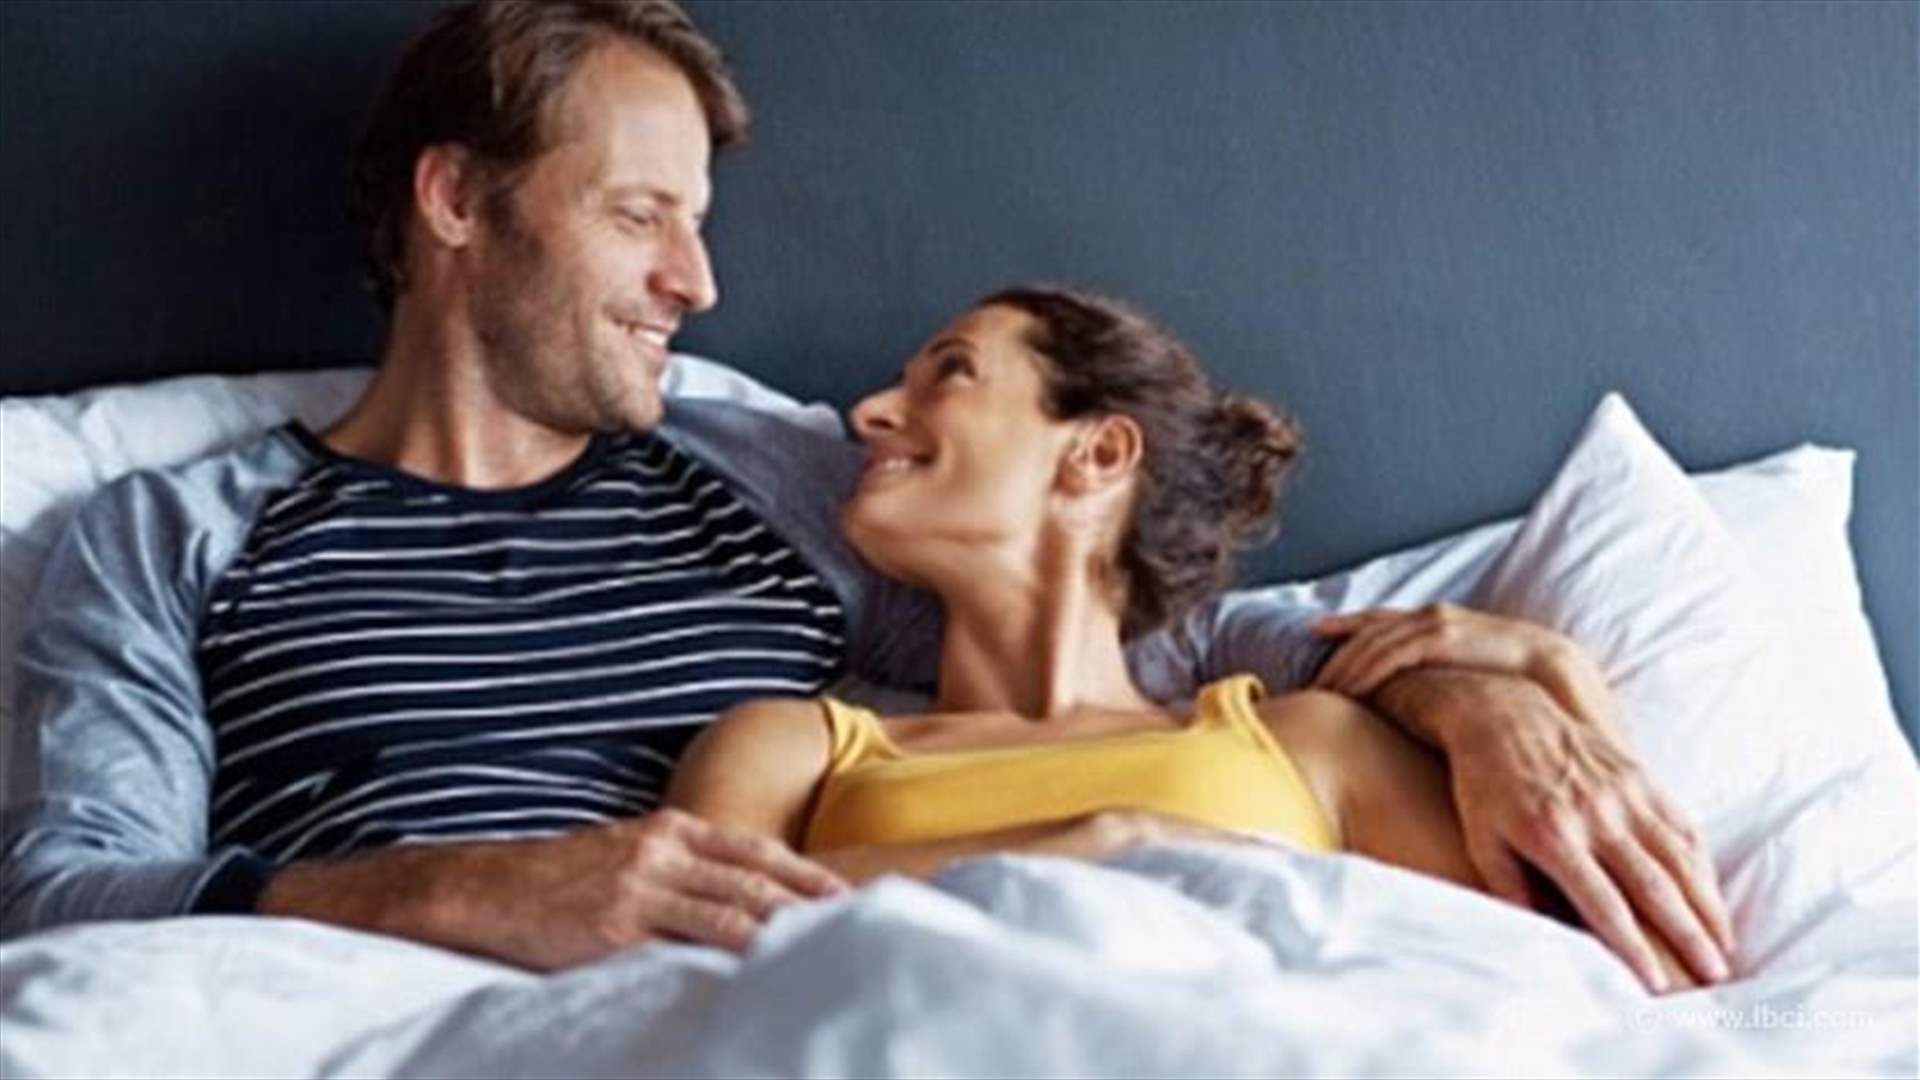    طريقة بسيطة للتمتّع بحياةٍ زوجيّة وجنسية سعيدة مع الشريك